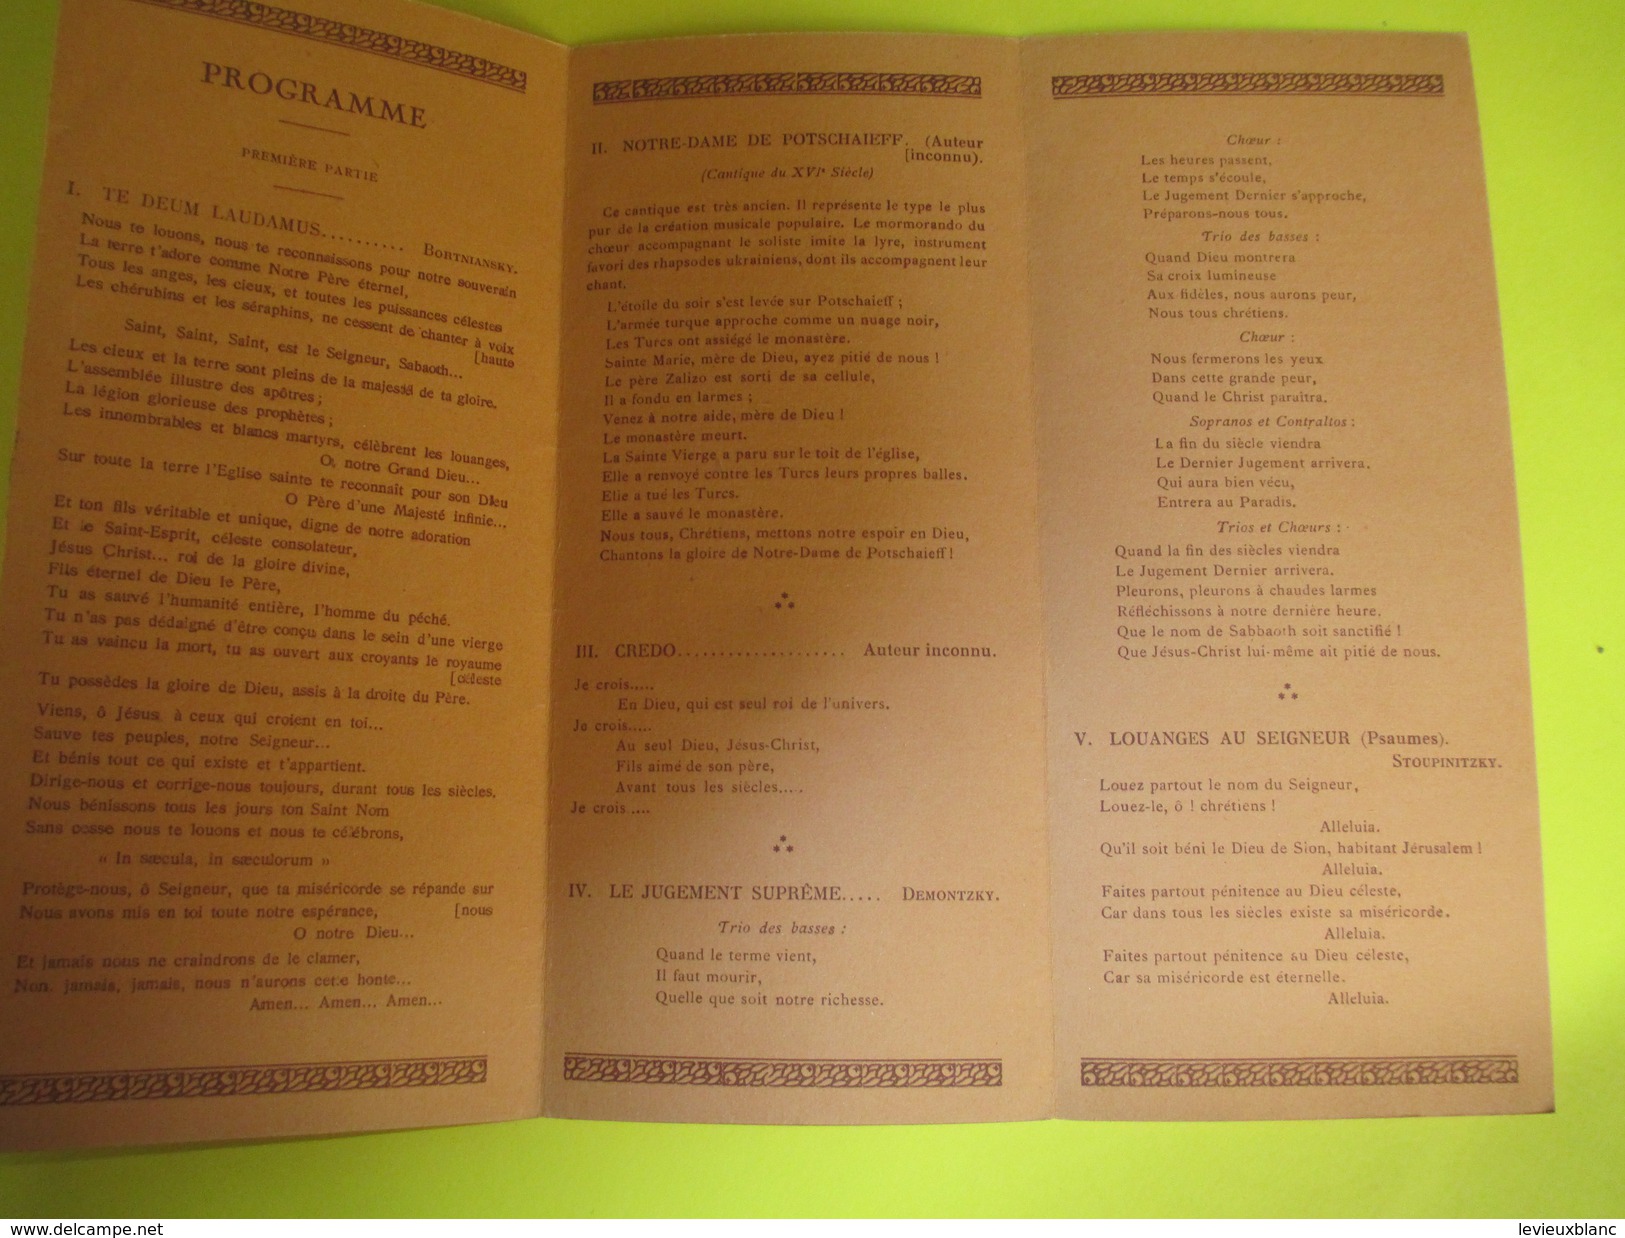 Concert/ Salut Solennel/Choeur De La Chapelle De L'UKRAINE/ Séméonovitch/ Kiev/Vers 1930 ?     PROG91 - Programma's